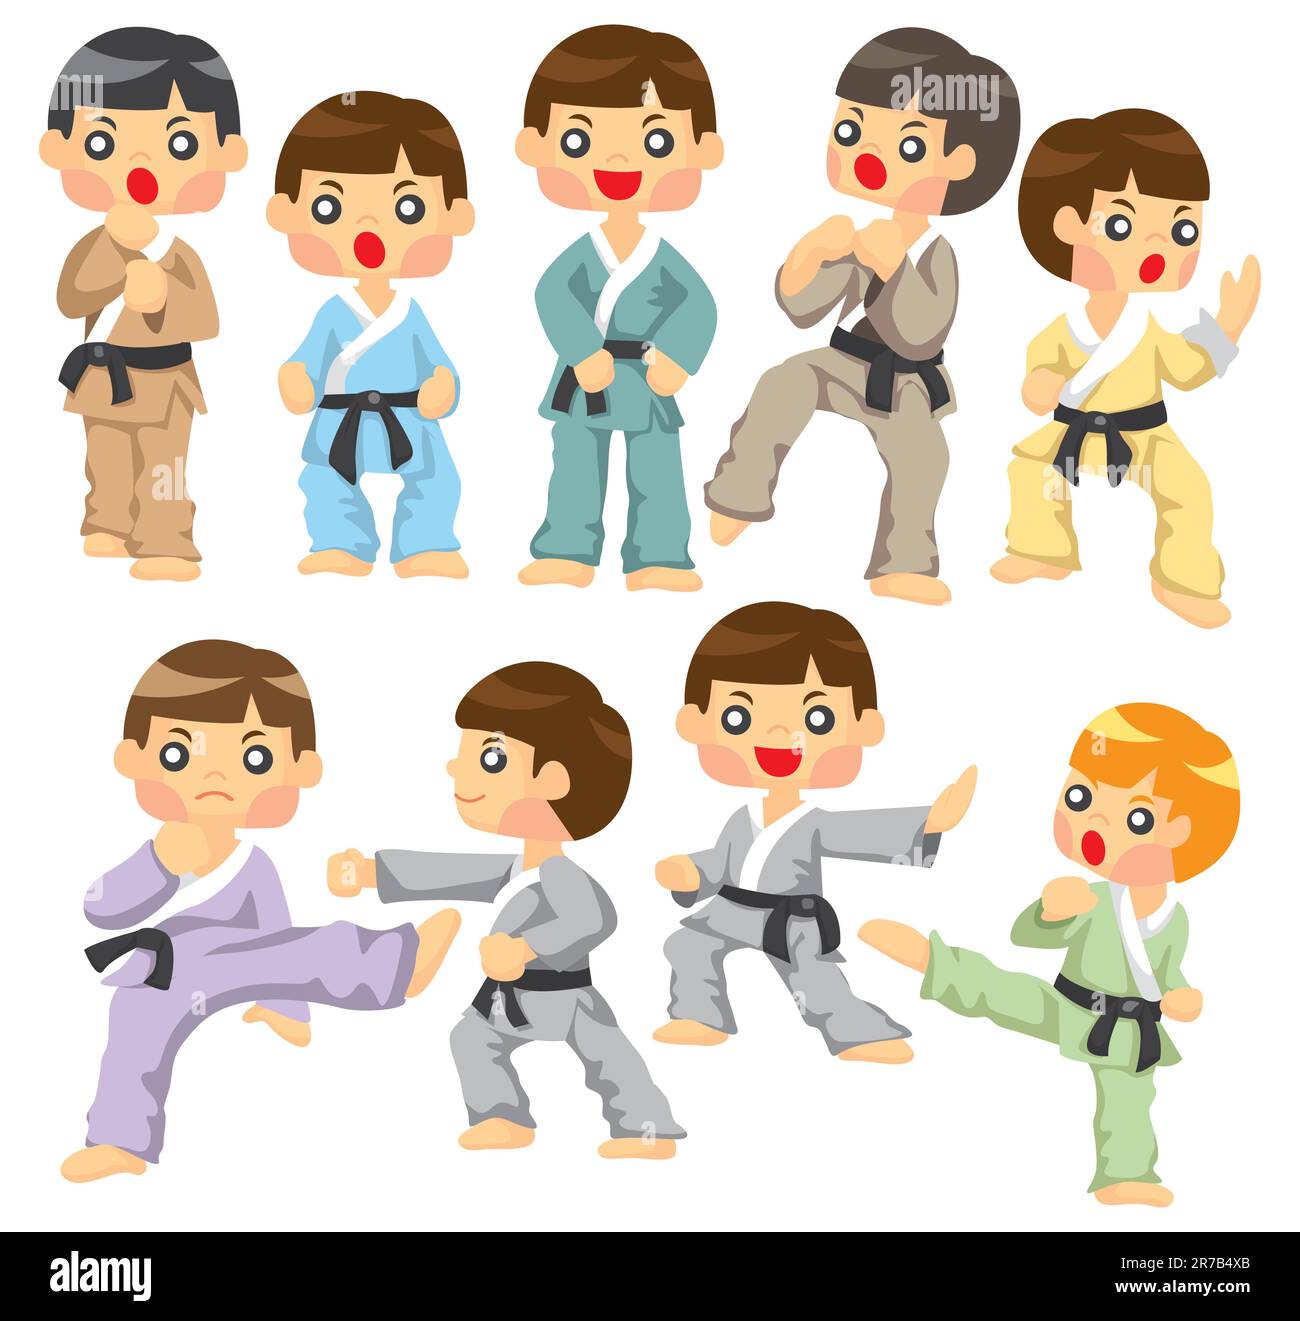 Icona Cartoon Karate Player Illustrazione Vettoriale